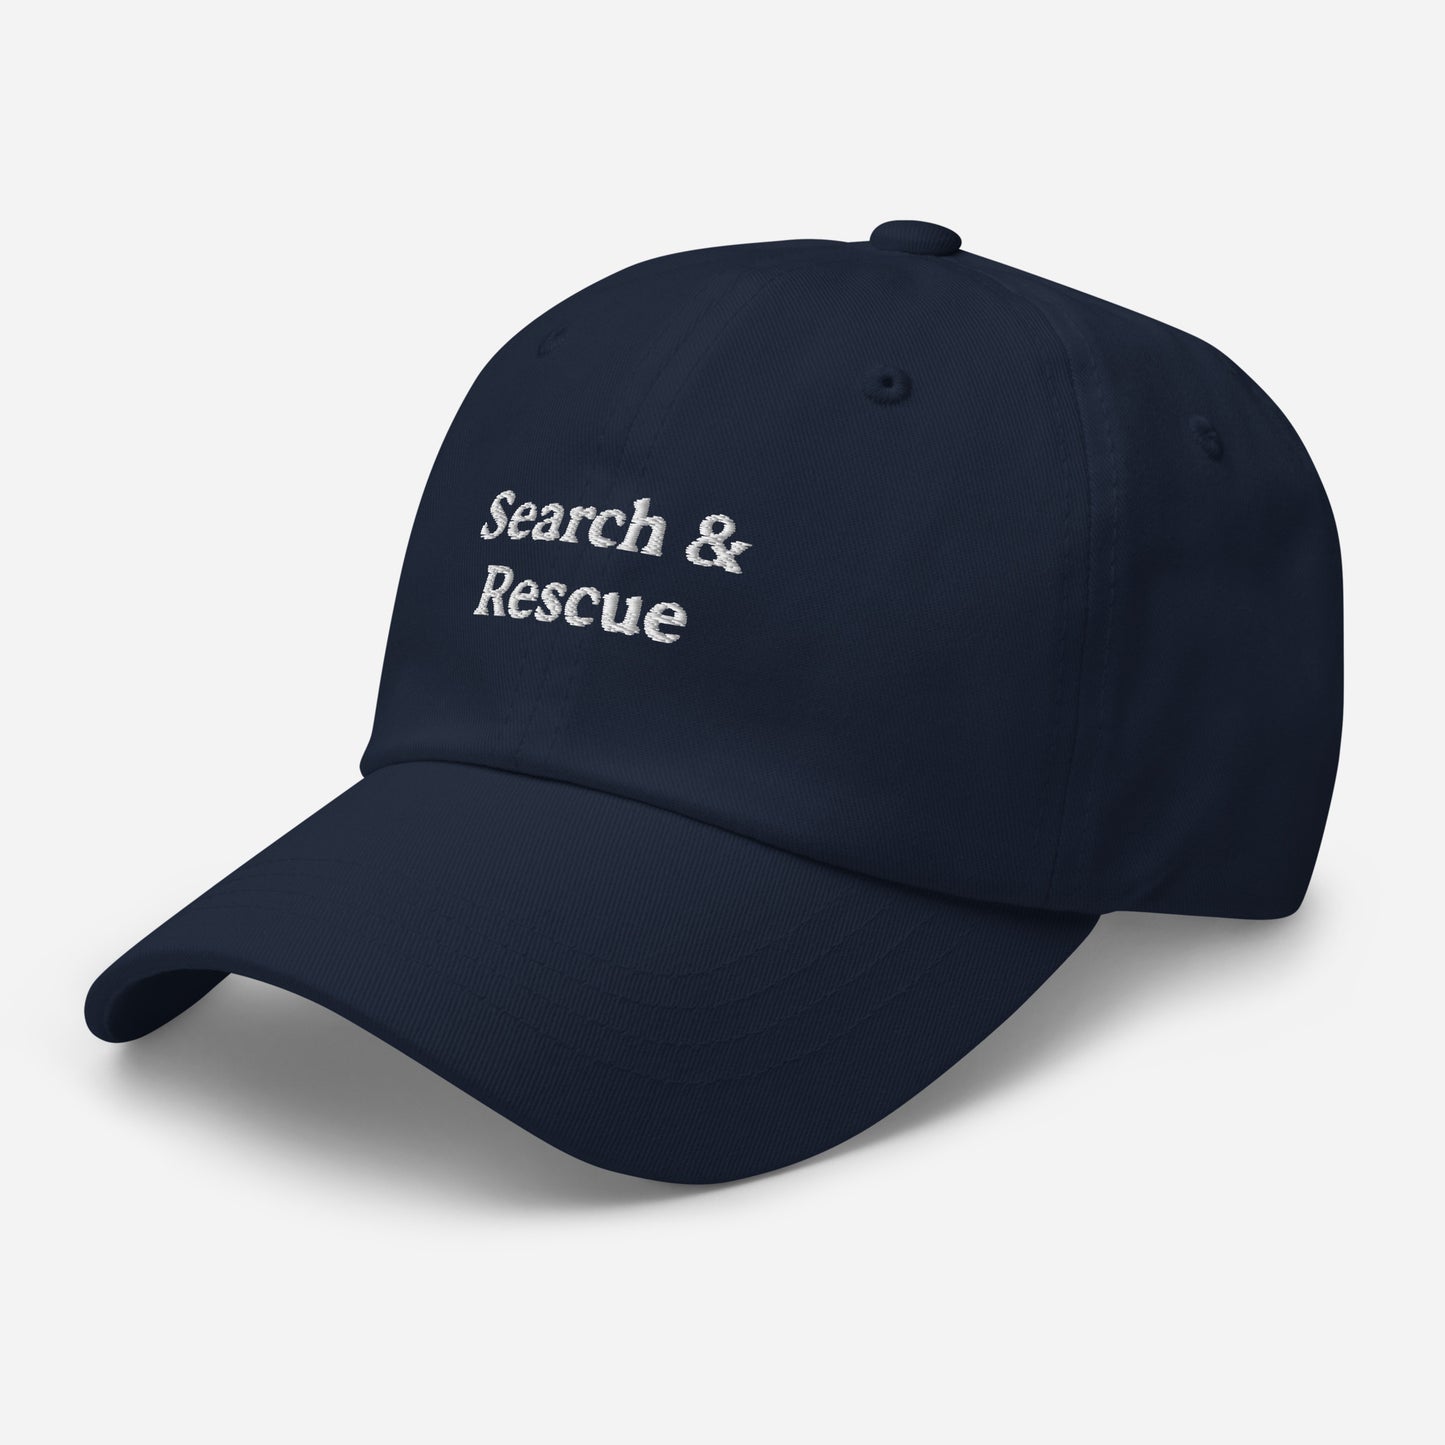 Search & Rescue Hat